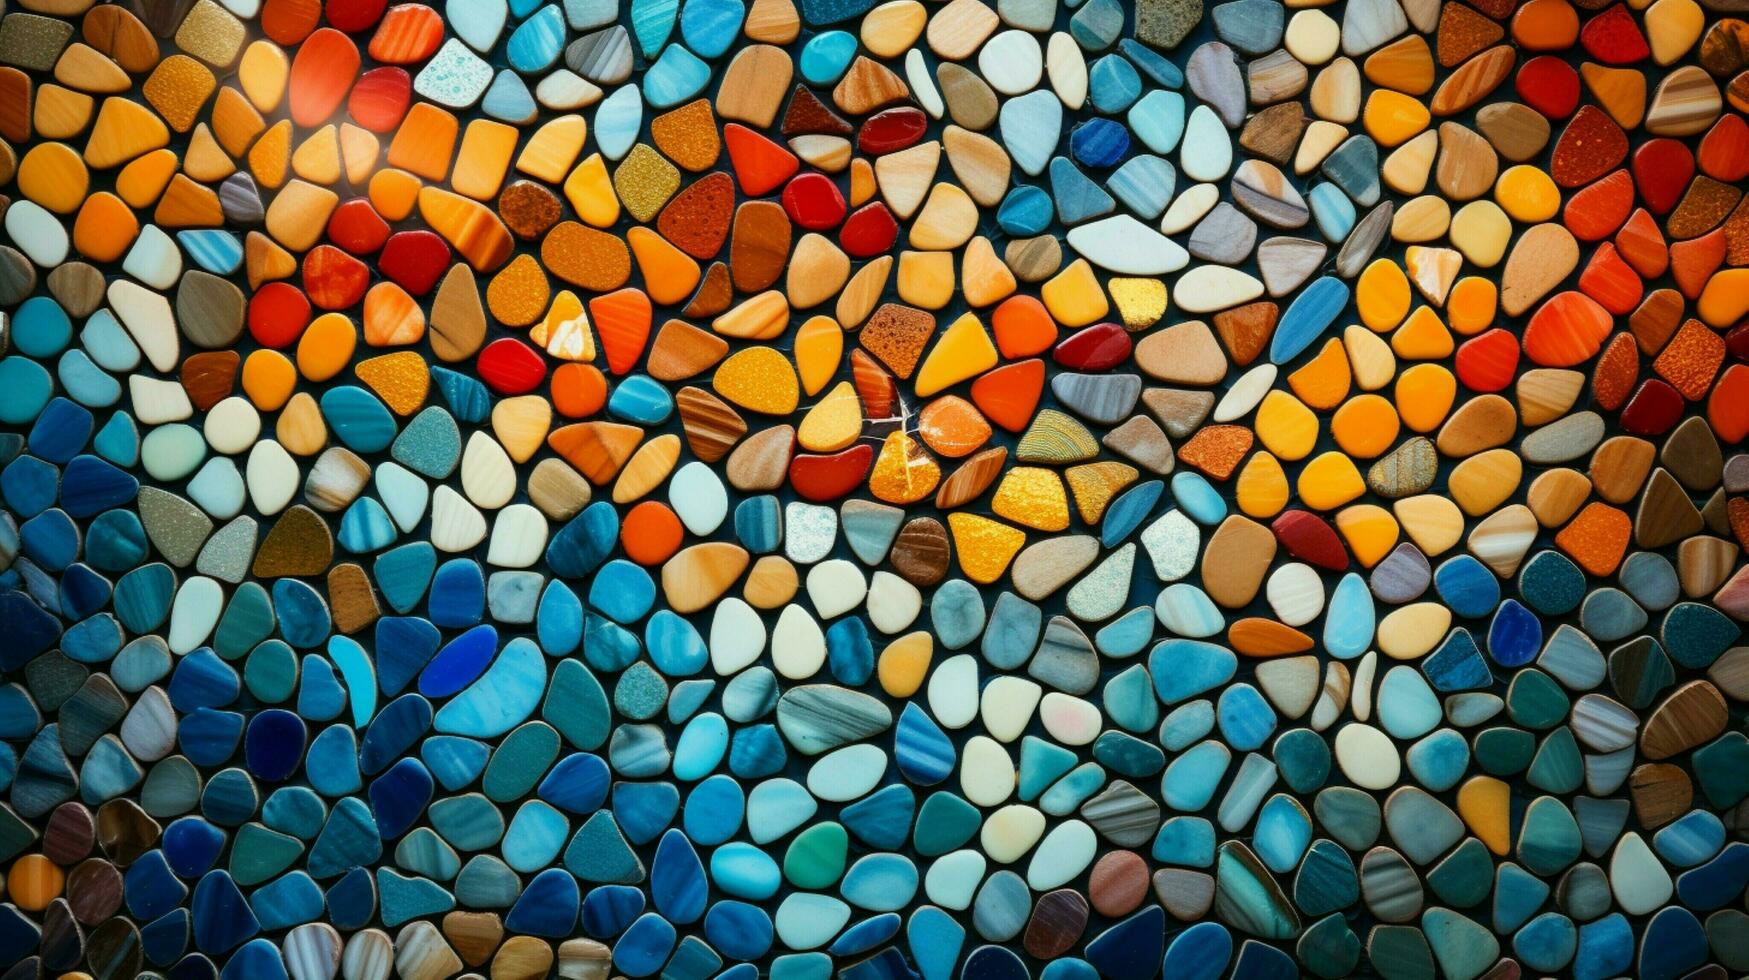 AI generated Mosaic Patterns background photo